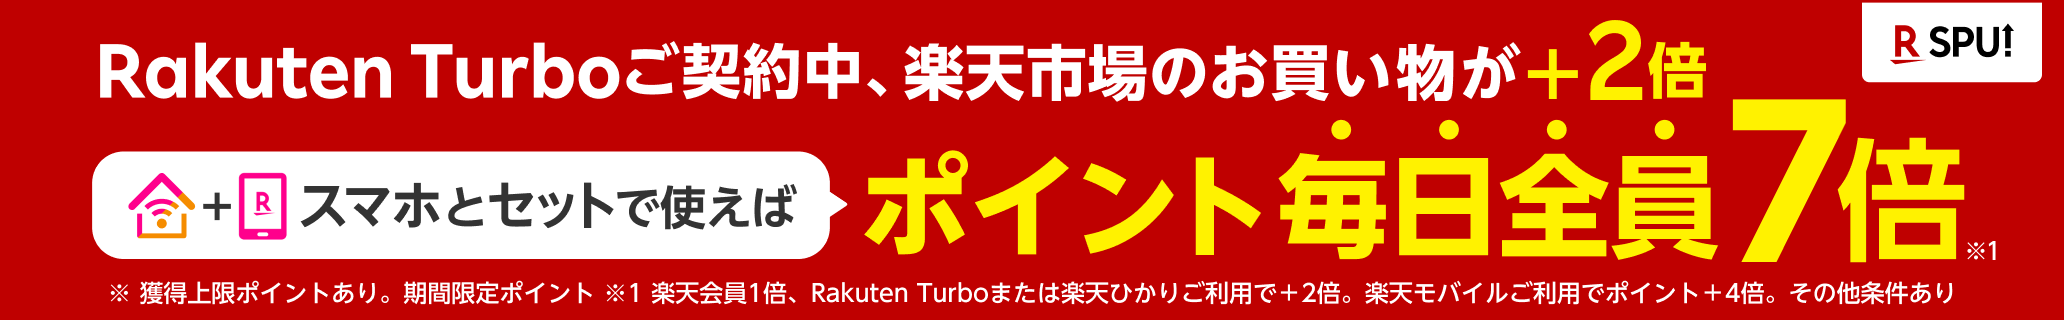 Rakuten Turboご契約中、楽天市場のお買い物が+2倍 スマホとセットで使えばポイント毎日全員7倍 ※獲得上限コインとあり。期間限定ポイント ※その他条件あり